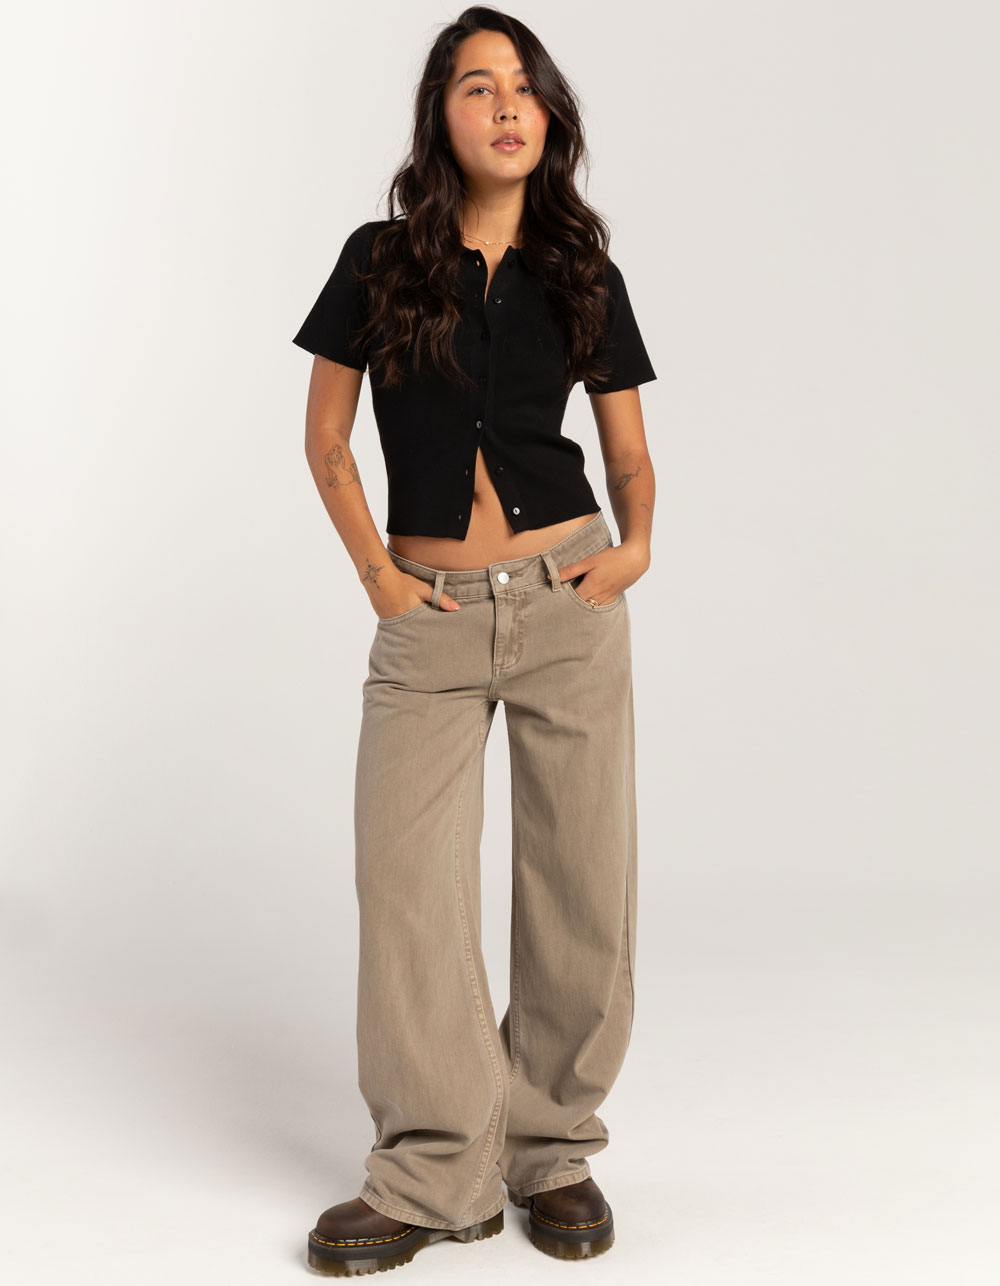 NEW RSQ Jeans Tan Brown Manhattan High Rise Size 7/28